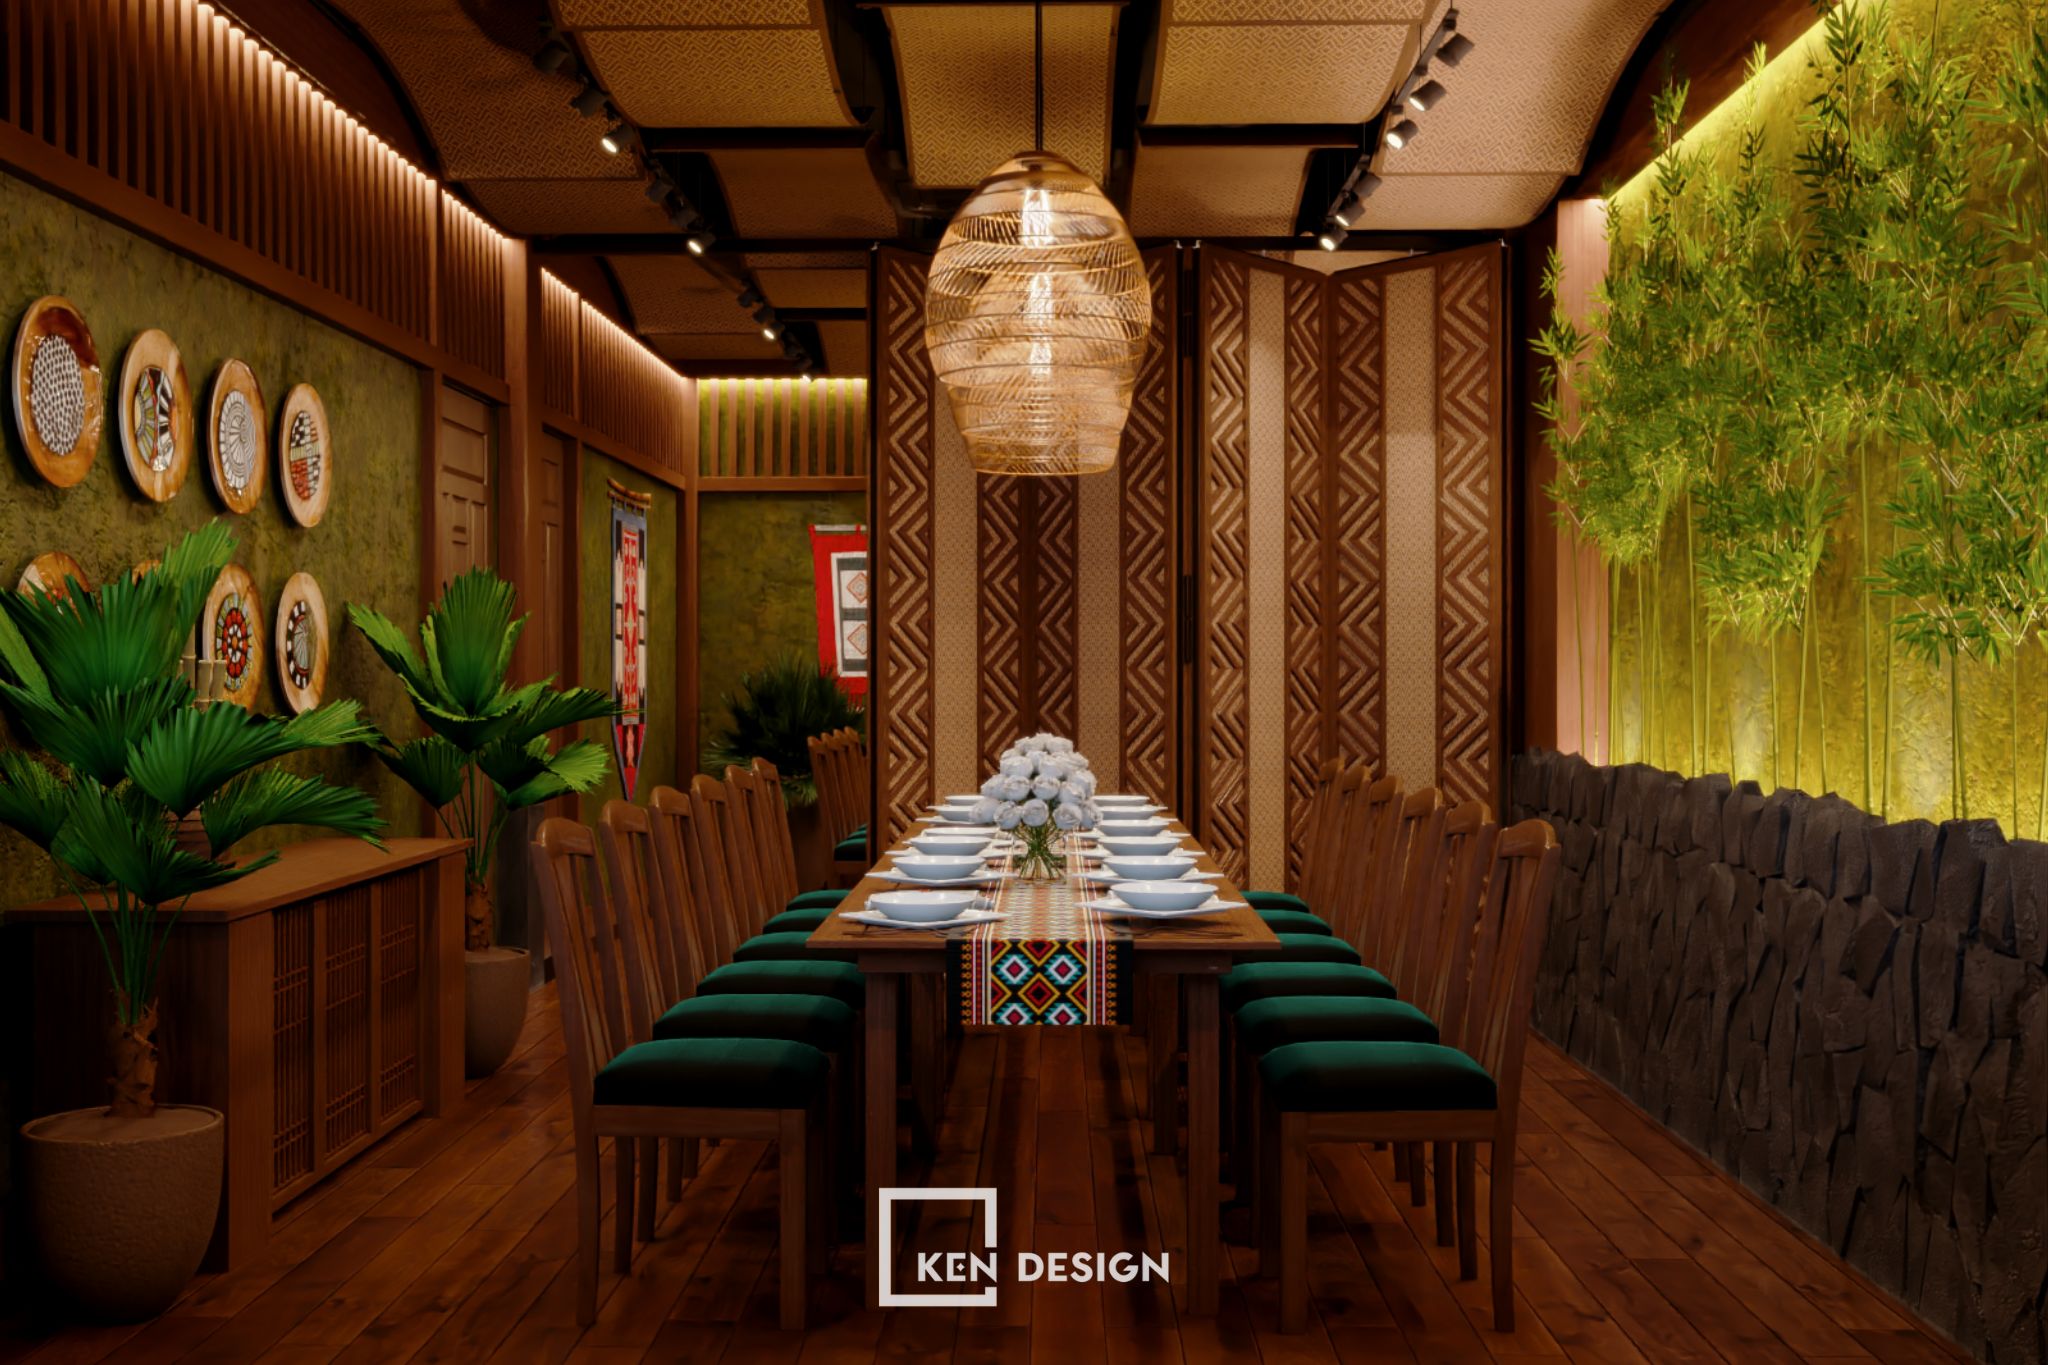 The Design of Hai Dang Restaurant